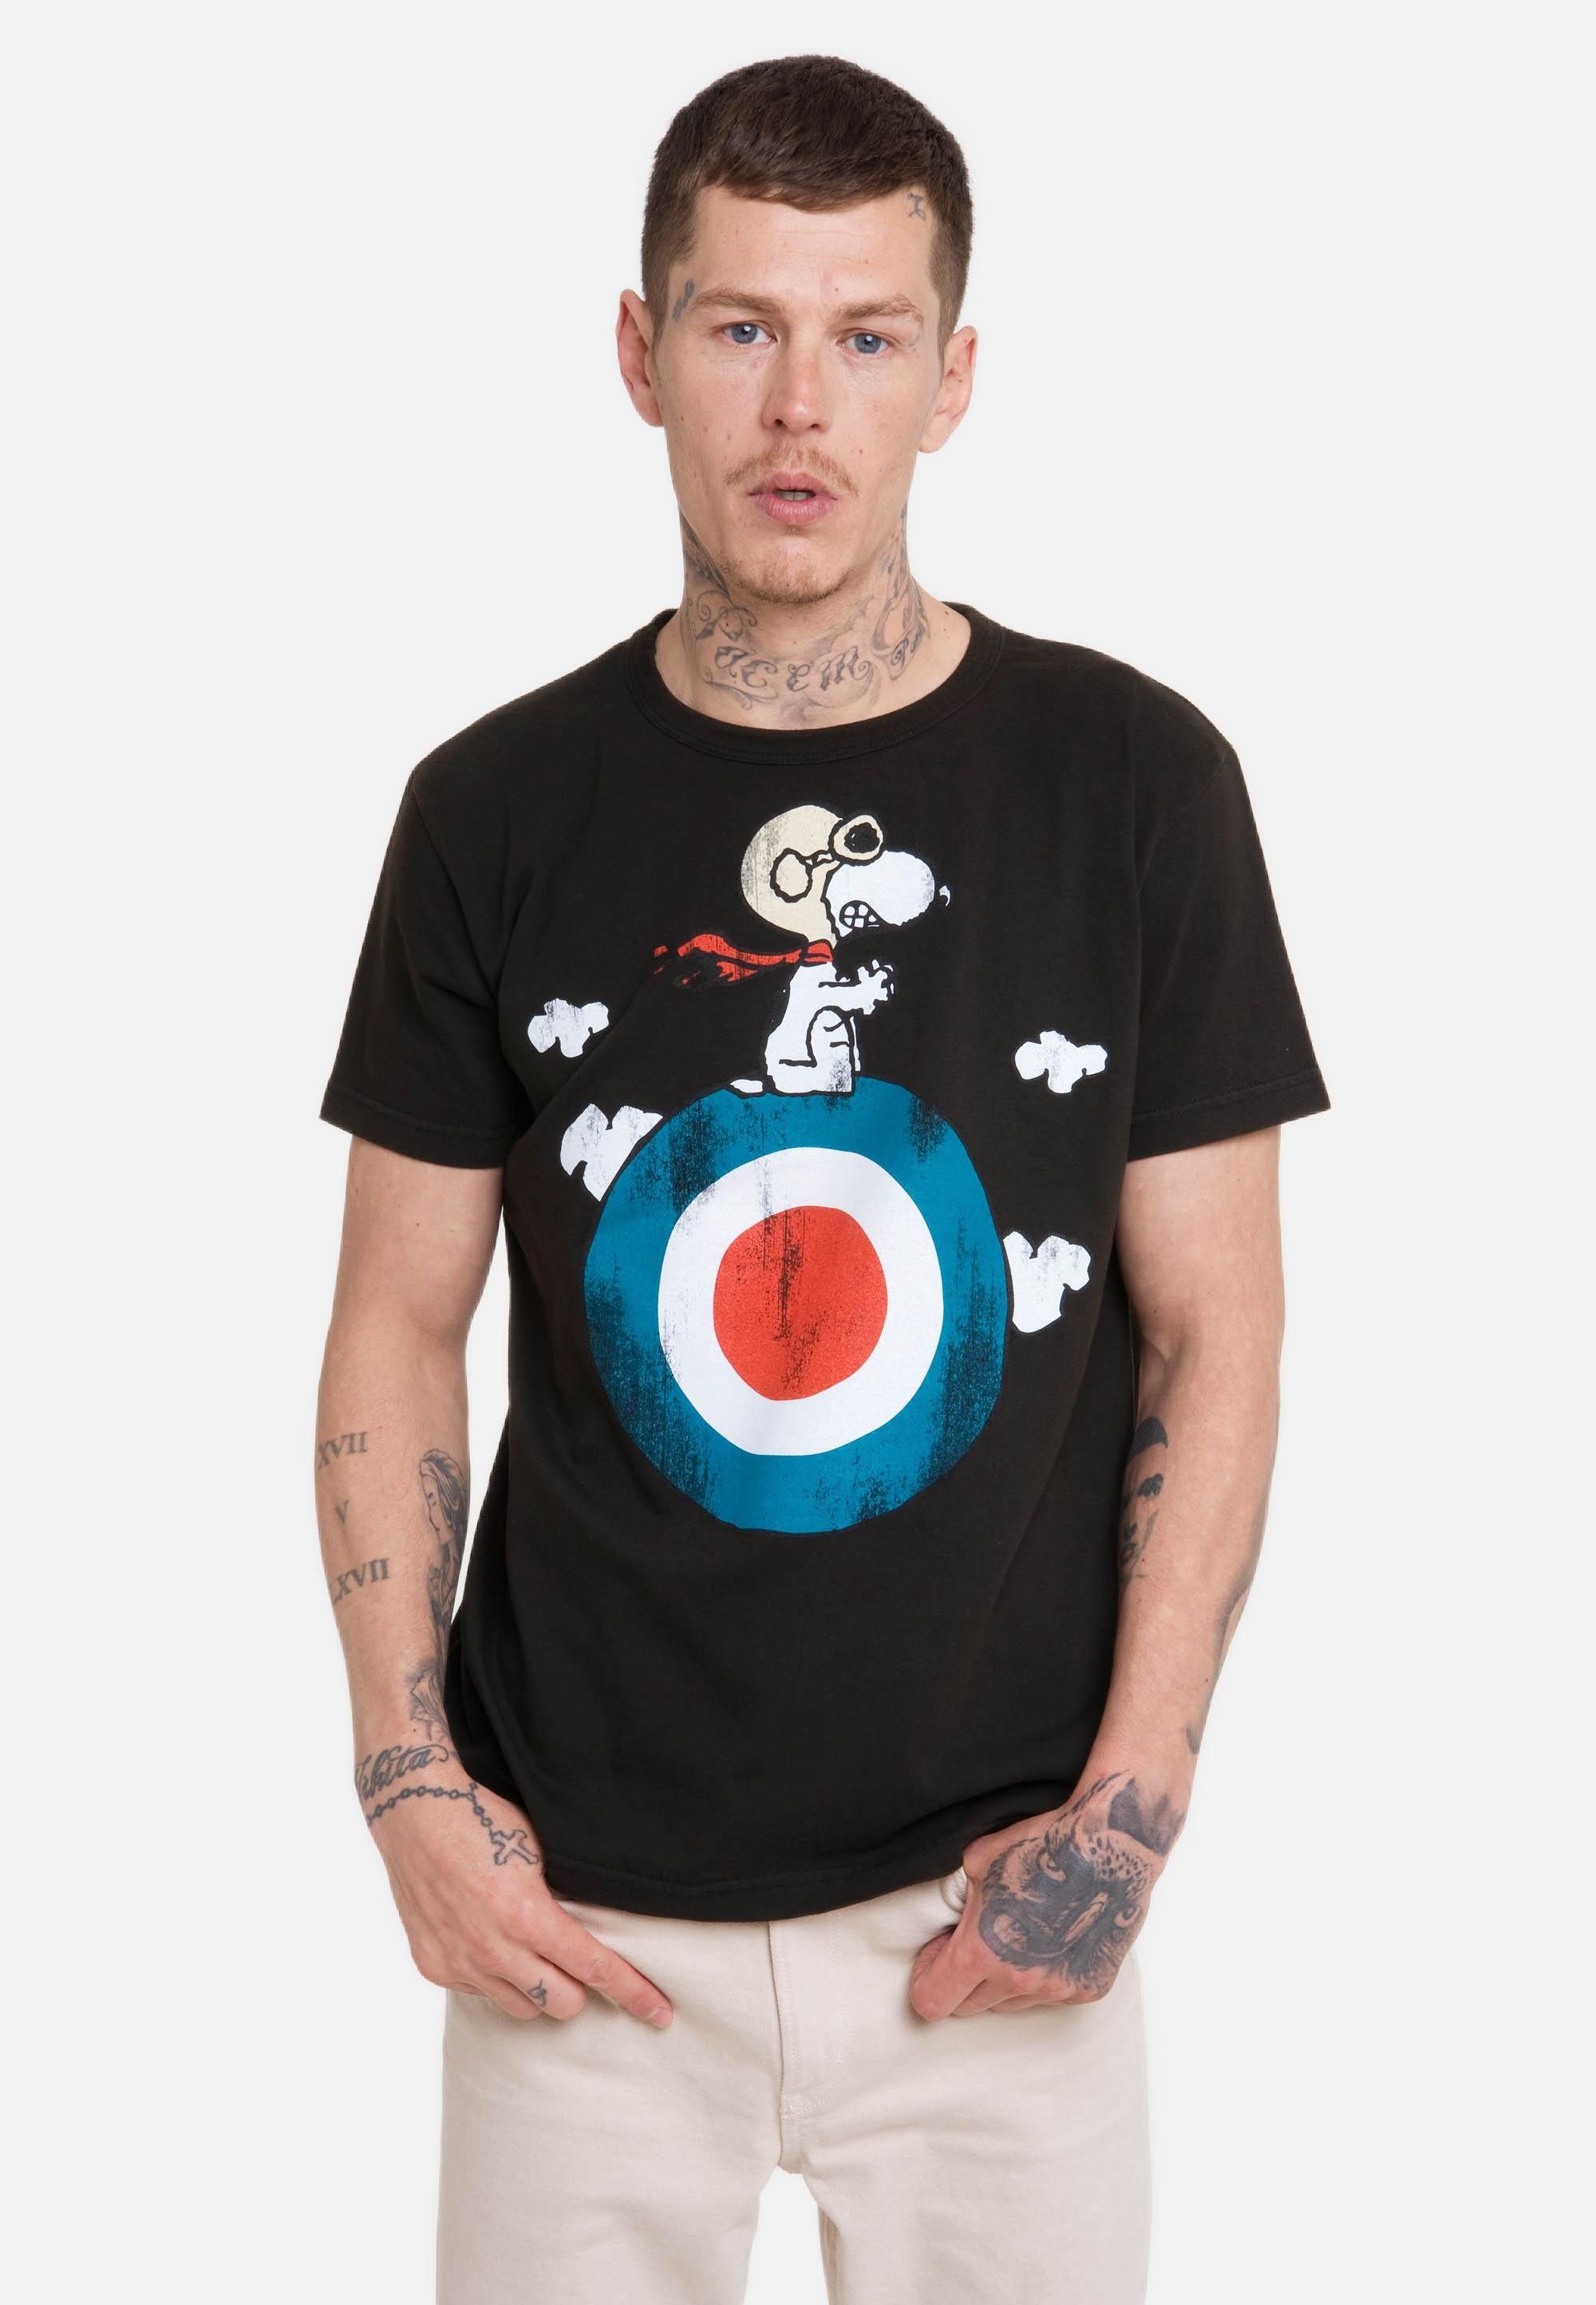 LOGOSHIRT T-Shirt Peanuts - Print, T-Shirt mit lizenziertem für Lustiges Logoshirt Snoopy Herren von